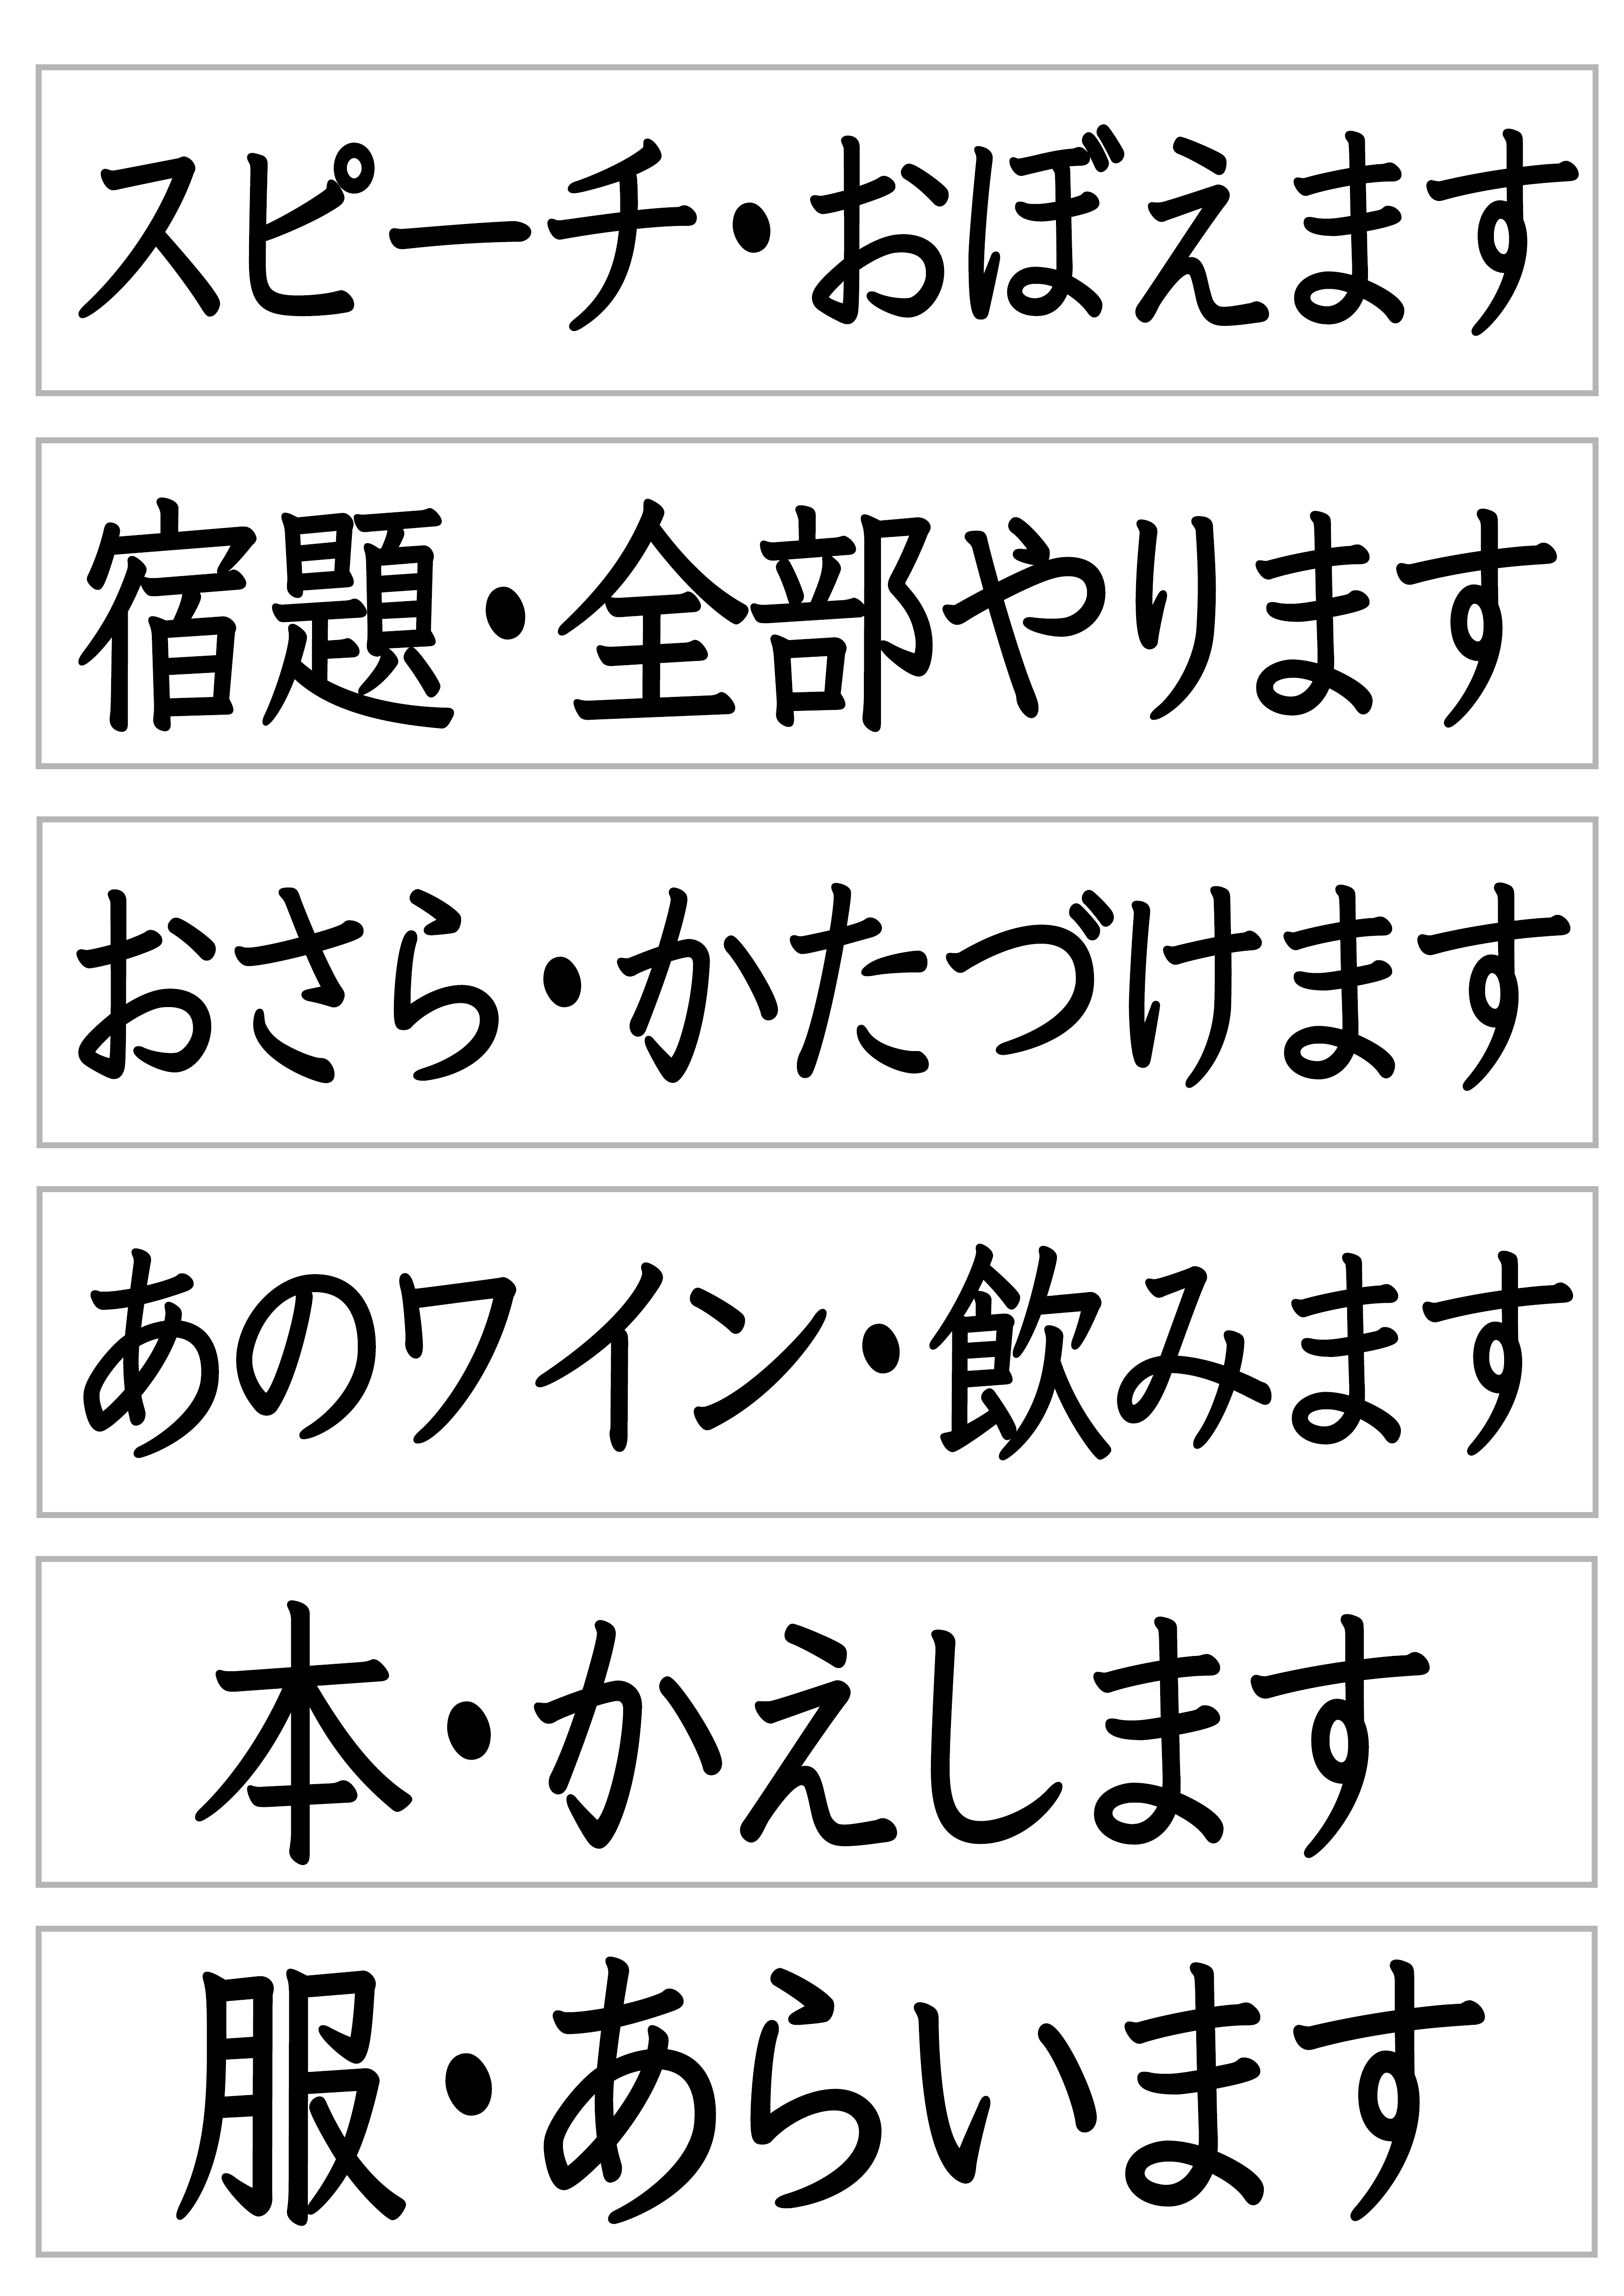 みんなの日本語29課文字カード